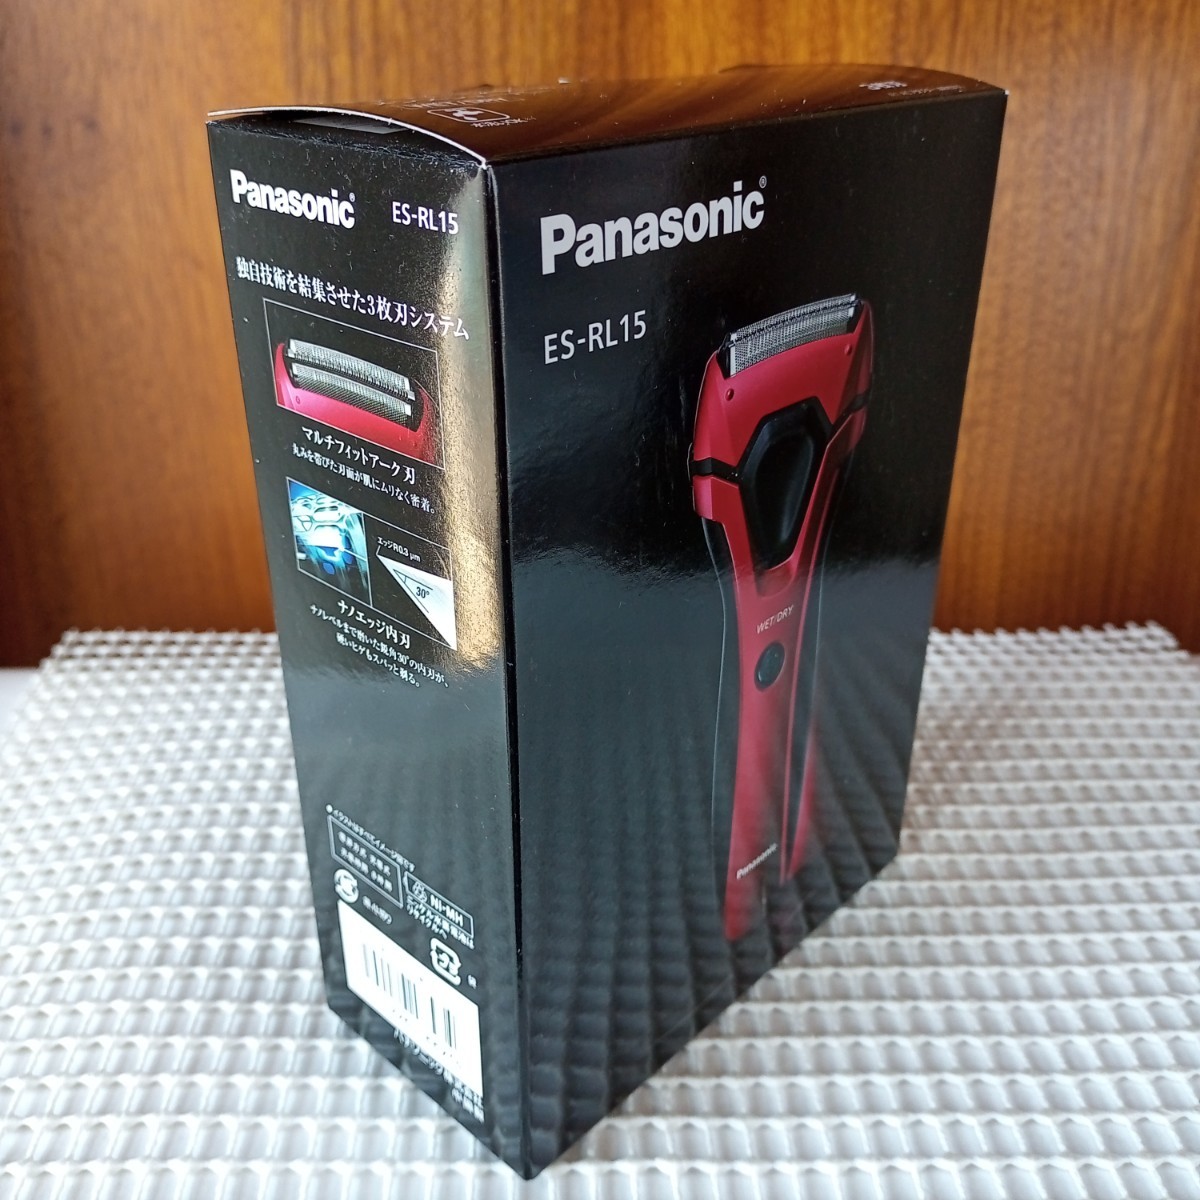 【新品未使用品】風呂剃りOK メンズシェーバーES-RL-15R(赤) パナソニックPanasonic 